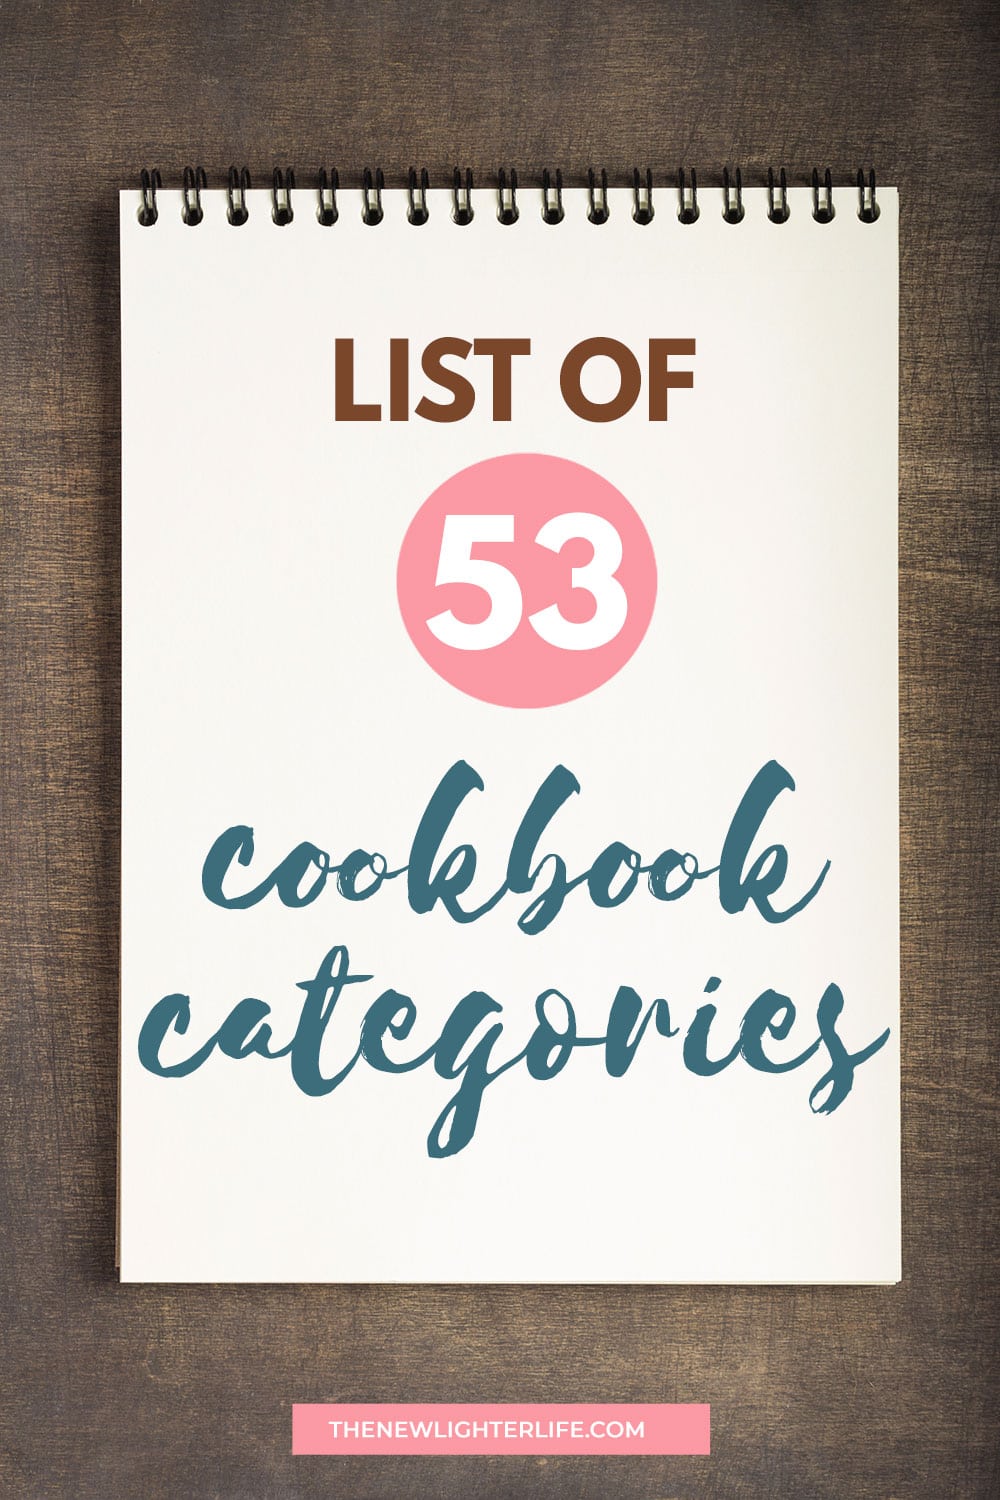 How to make a recipe book: Create a DIY cookbook